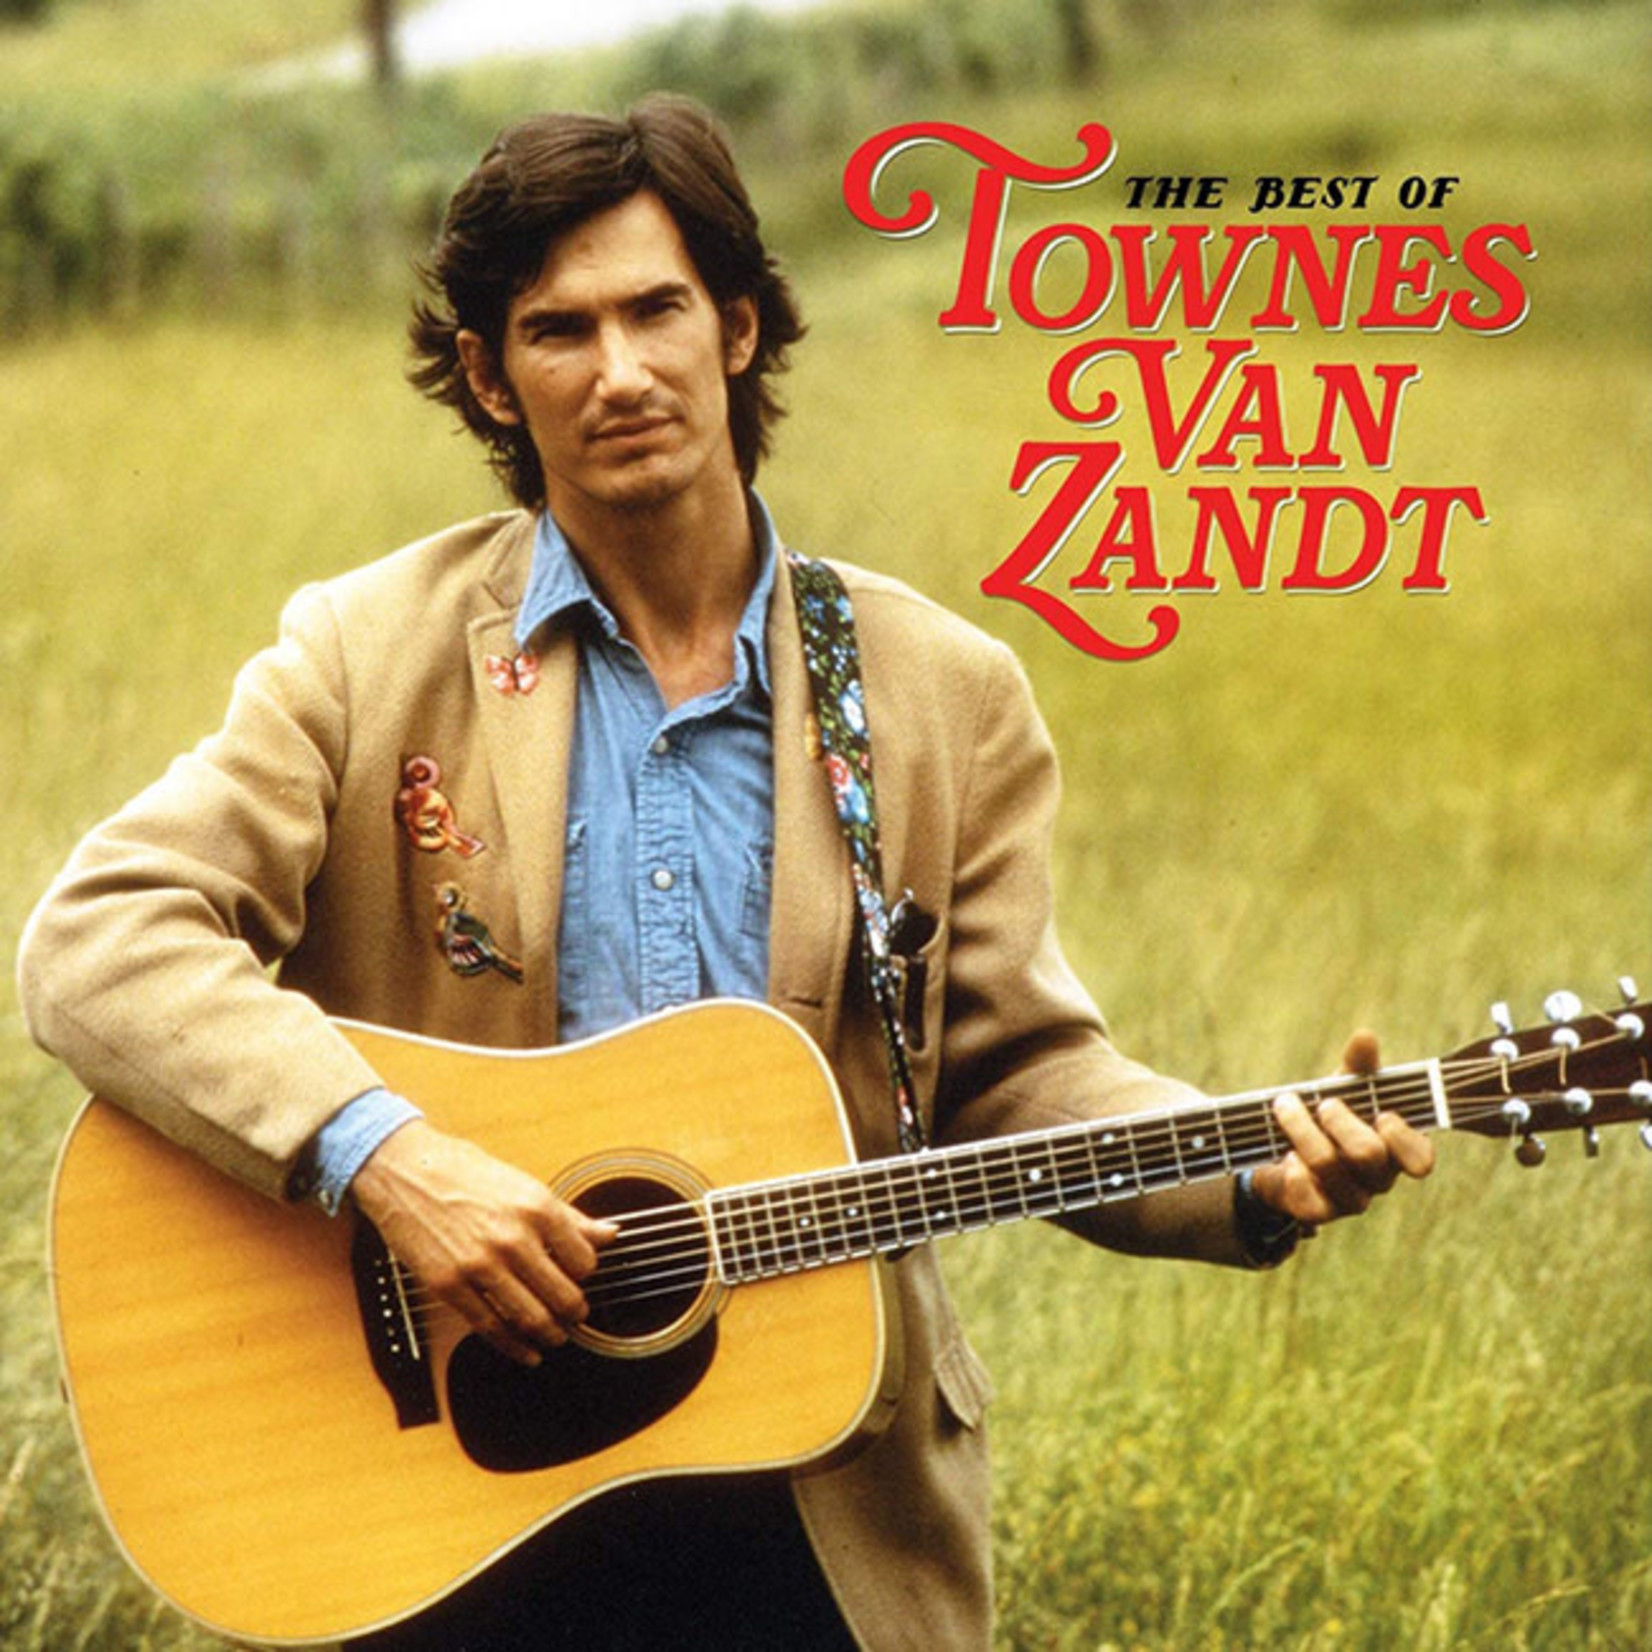 [New] Townes Van Zandt - The Best Of Townes Van Zandt (2LP)